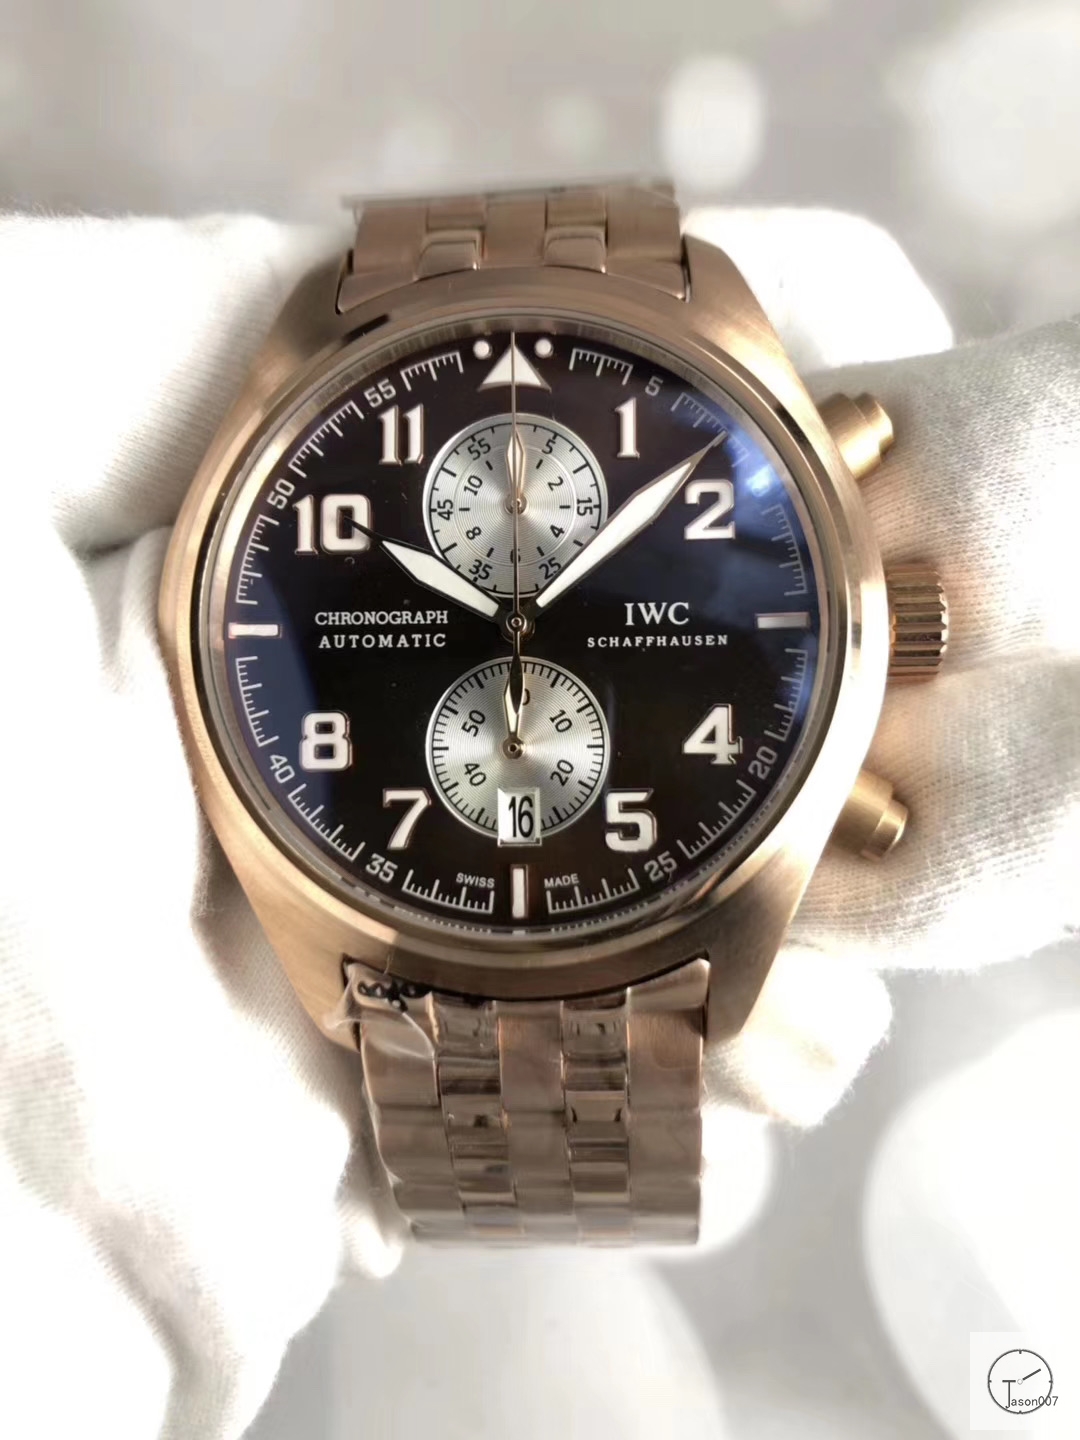 IWC Pilots Watch Chronograph Antoine De Saint Exupery Leather Strap Mens Wristwatches MOB23040560